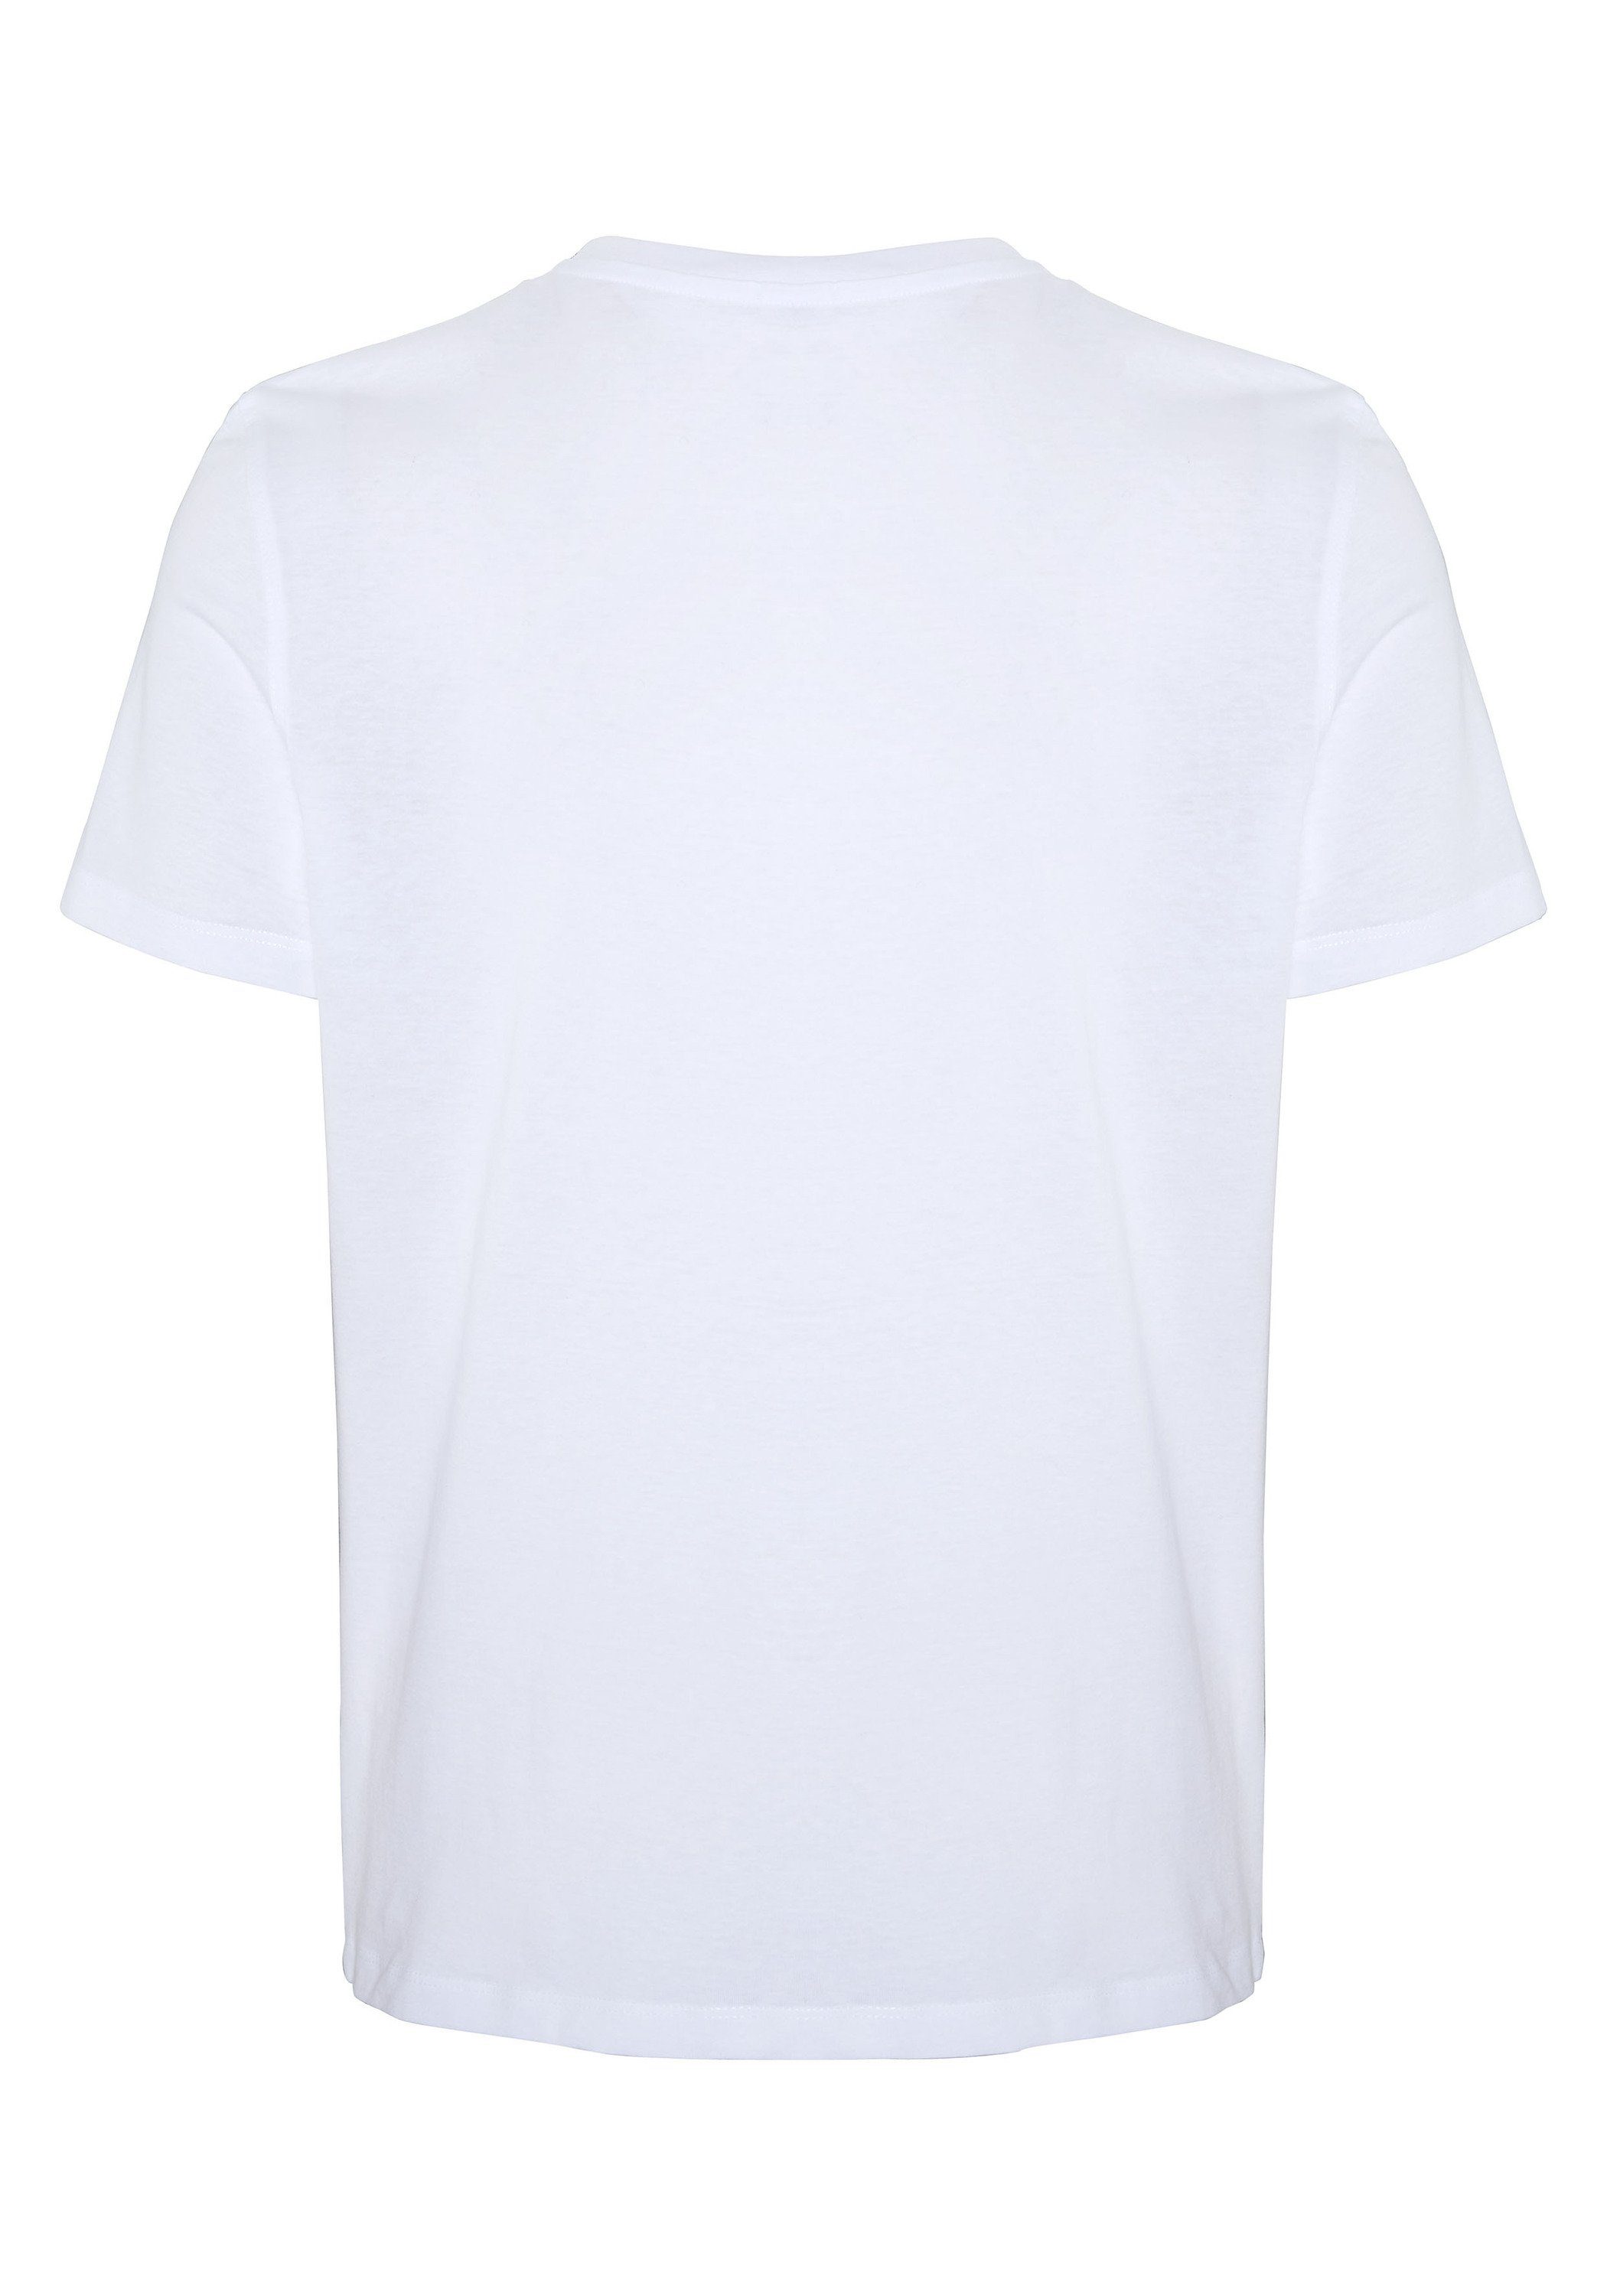 Sweatware White DENIM weicher Print-Shirt COLORADO Bright 11-0601 aus